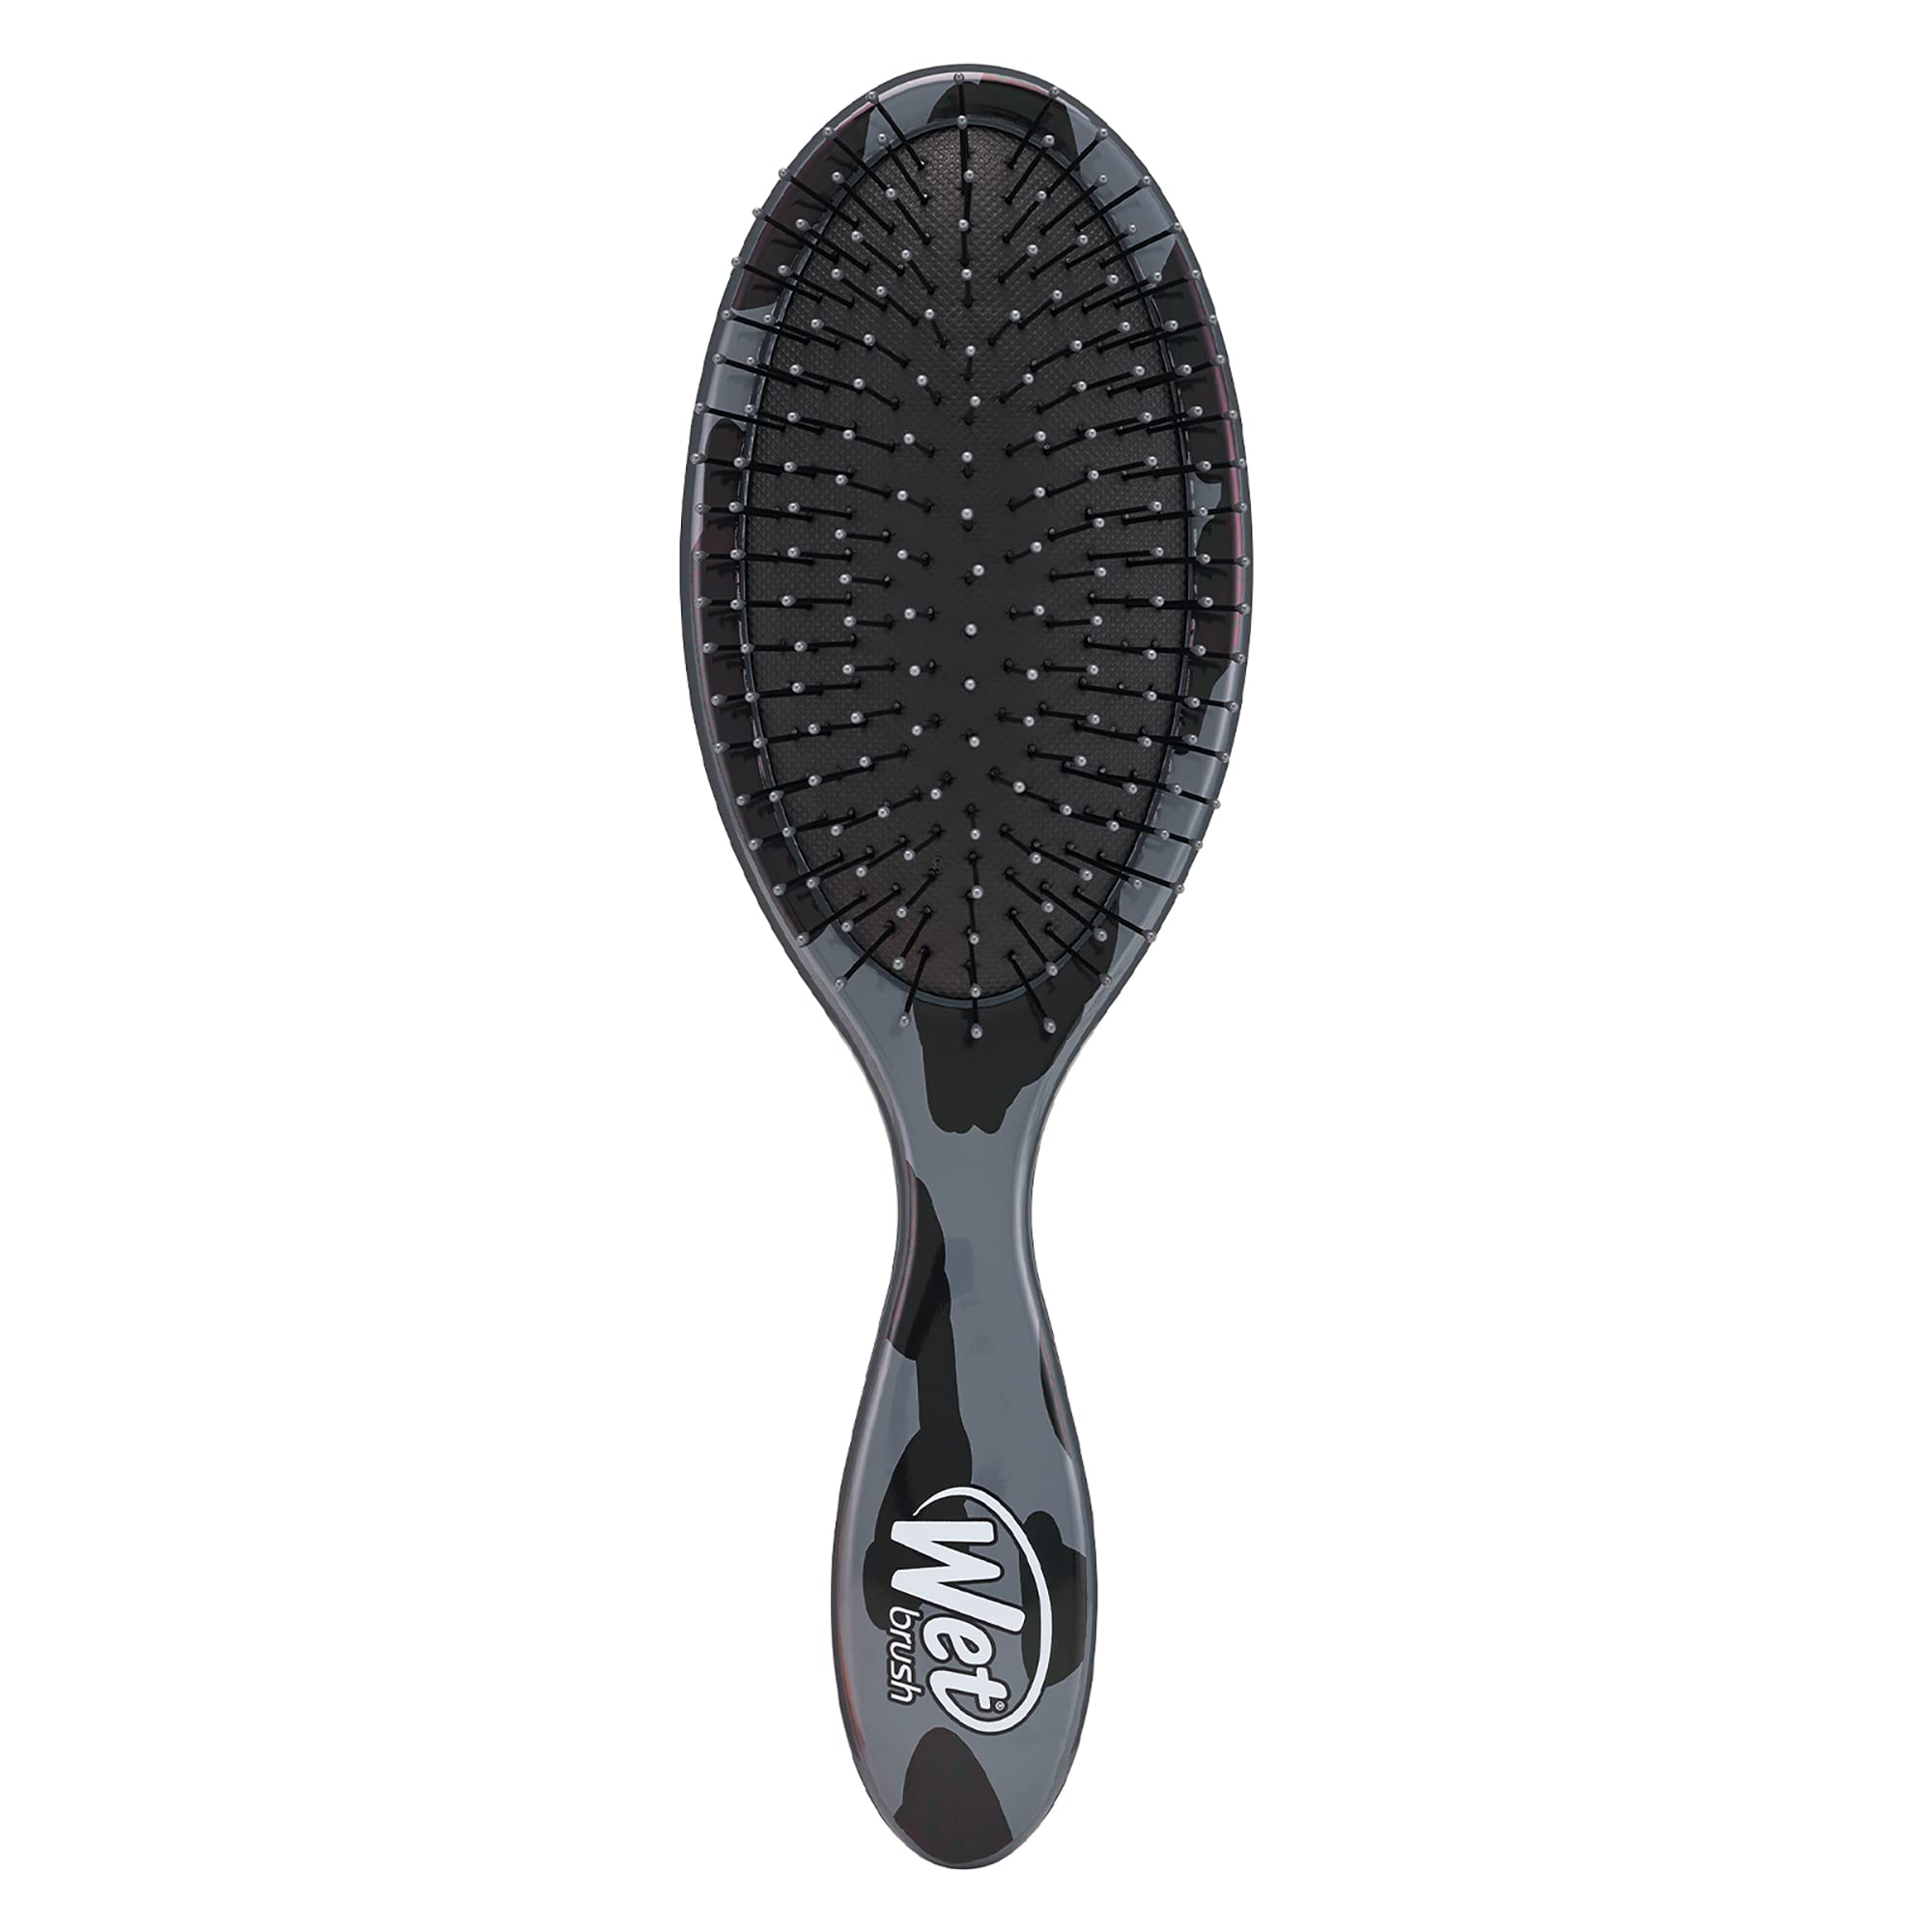 Wet Brush Original Detangling Hair Brush, Dark Gray Leopard - Ultra-Soft IntelliFlex Bristles - Detangler Brush Glide Through Tangles With Ease For All Hair Types - For Women, Men, Wet & Dry Hair